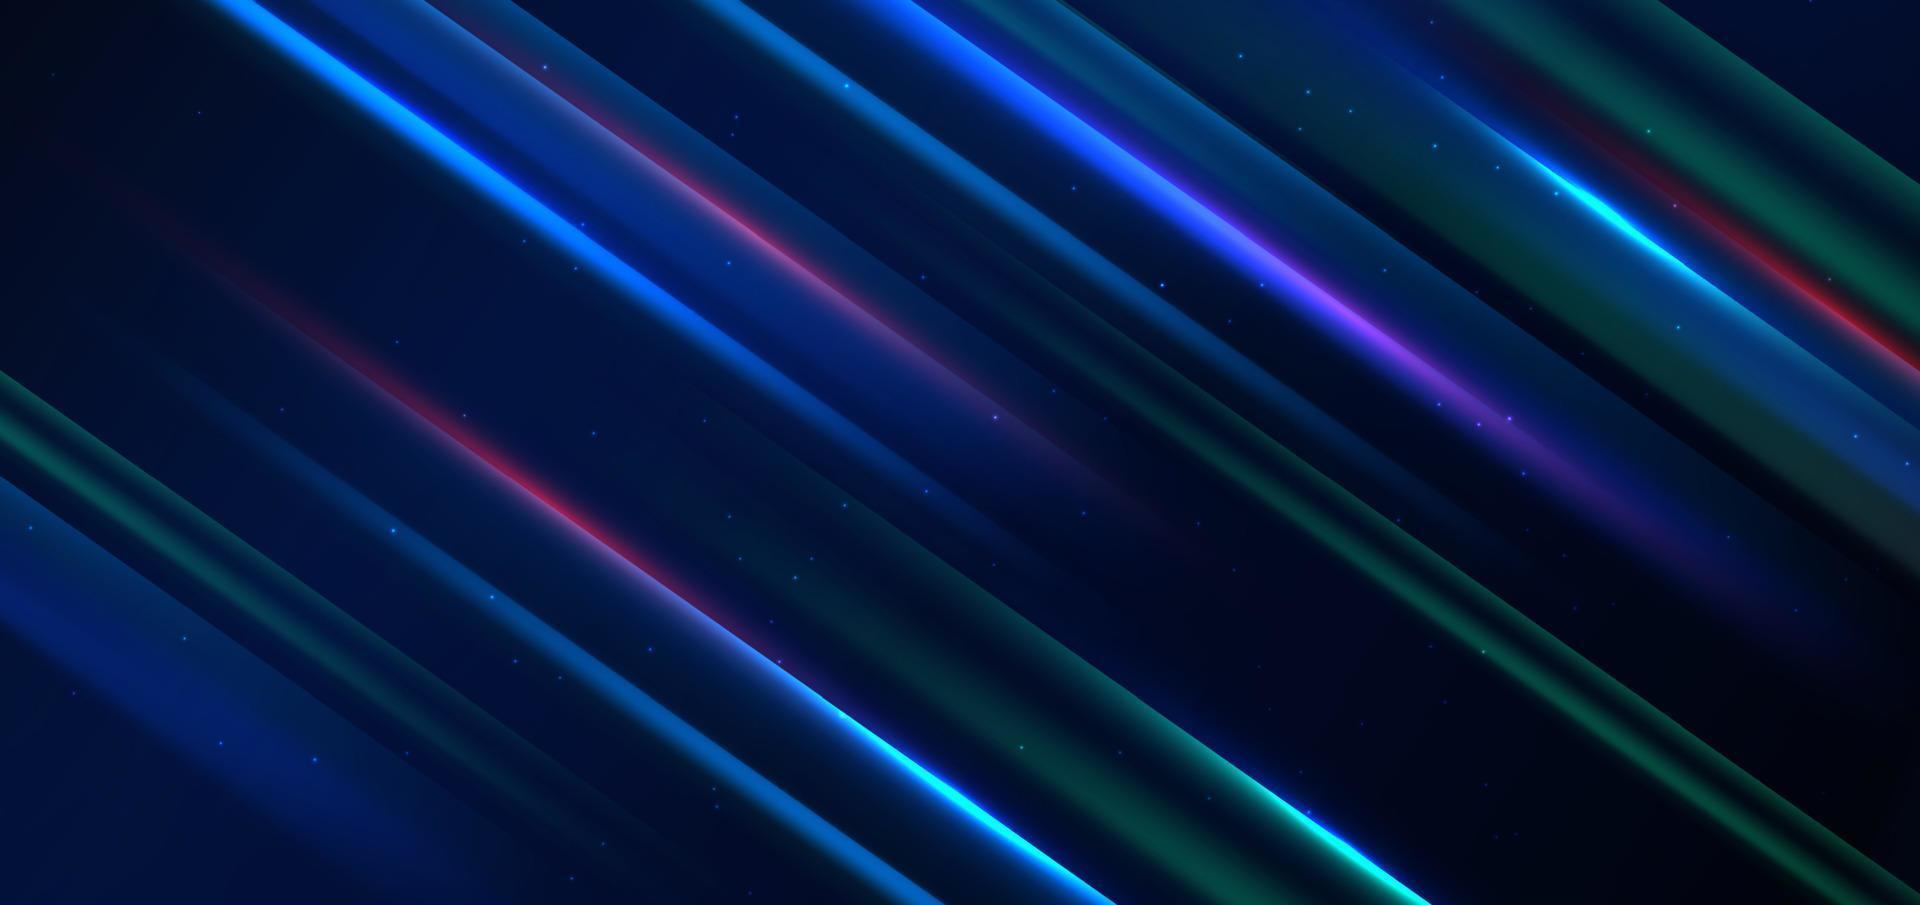 tecnología abstracta líneas de luz azul y roja brillantes futuristas con efecto de desenfoque de movimiento de velocidad sobre fondo azul oscuro. vector